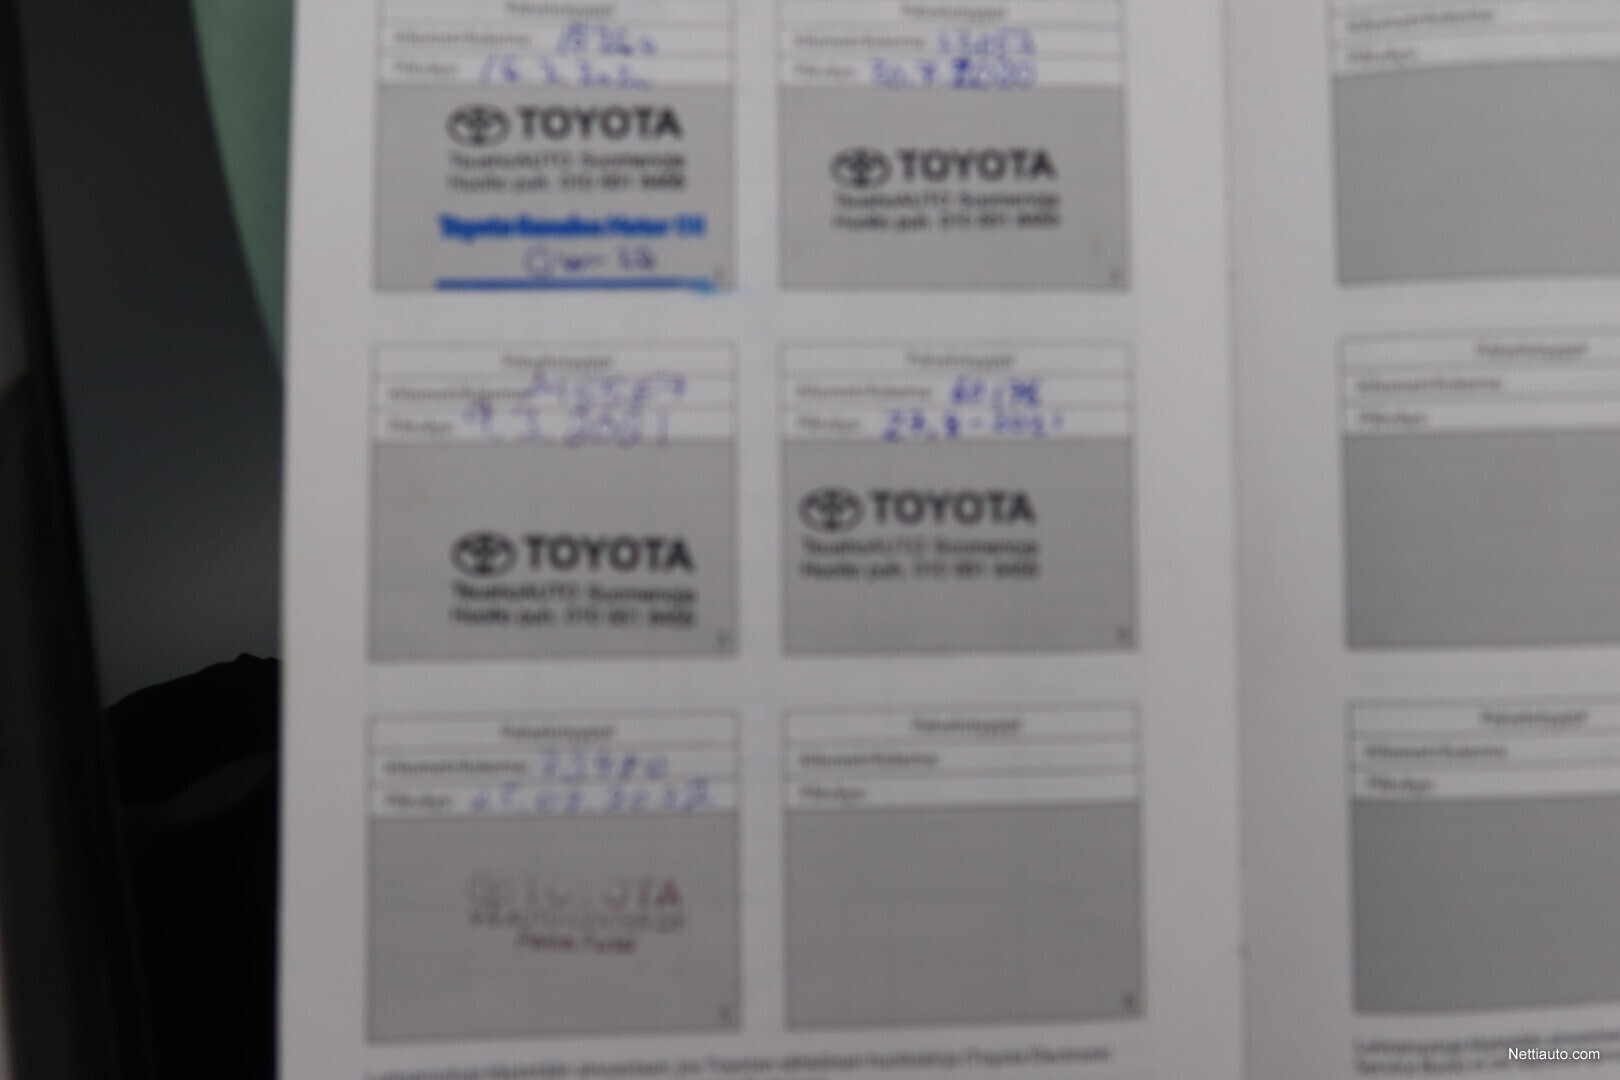 Toyota Corolla Sedan 1,8 Hybrid Active Edition / Plus-paketti / Bi-LED /  Kamera / Älykäs mukautuva vakionopeussäädin / Navi / Älyavain Sedan 2019 -  Used vehicle - Nettiauto